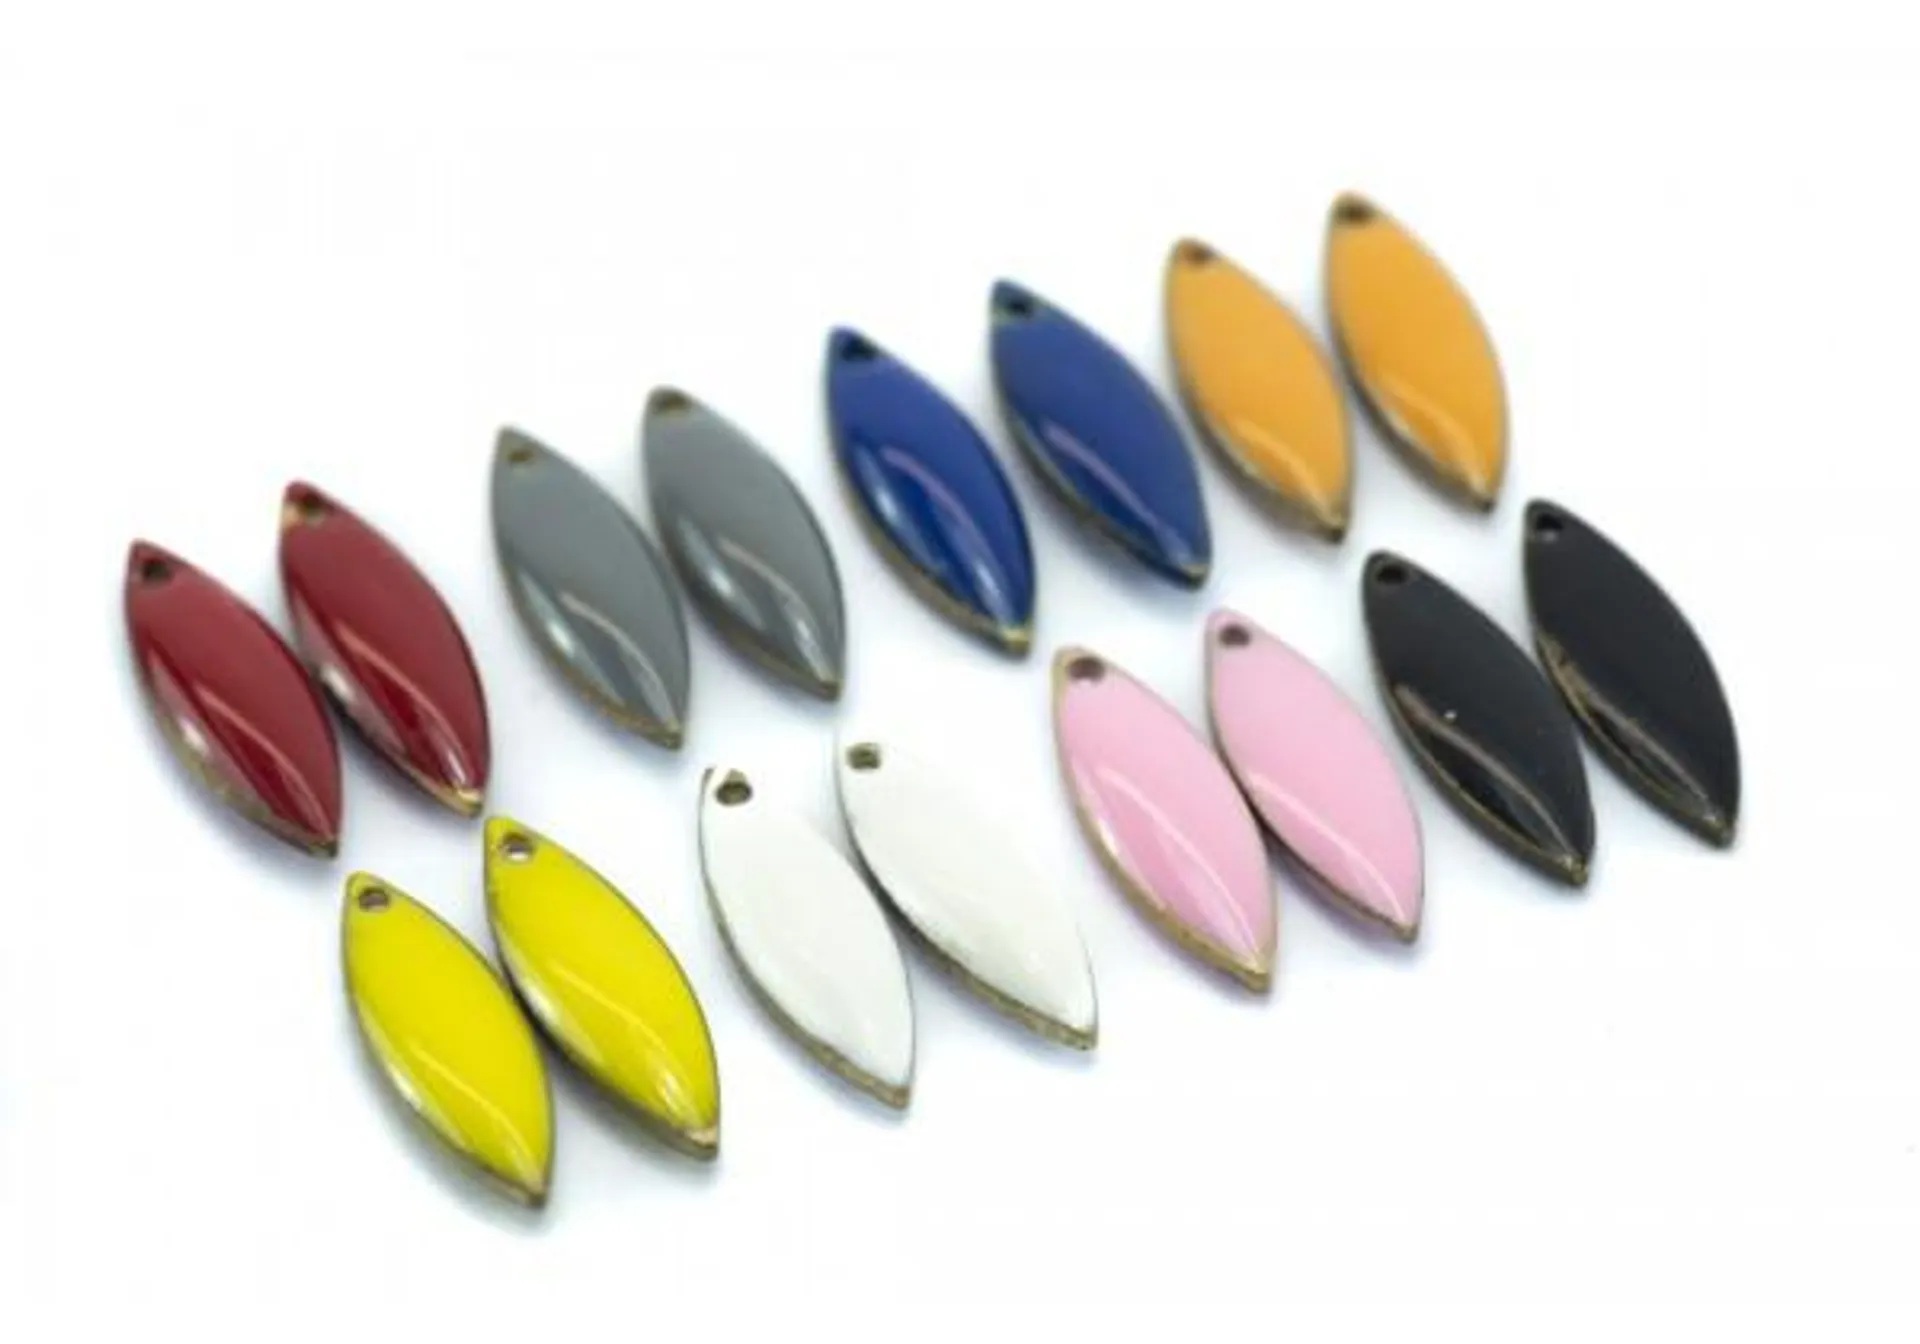 16 Sequins émaillés Navette - Dim. : 16 x 5 mm - Email Double face - Lot Multicolore